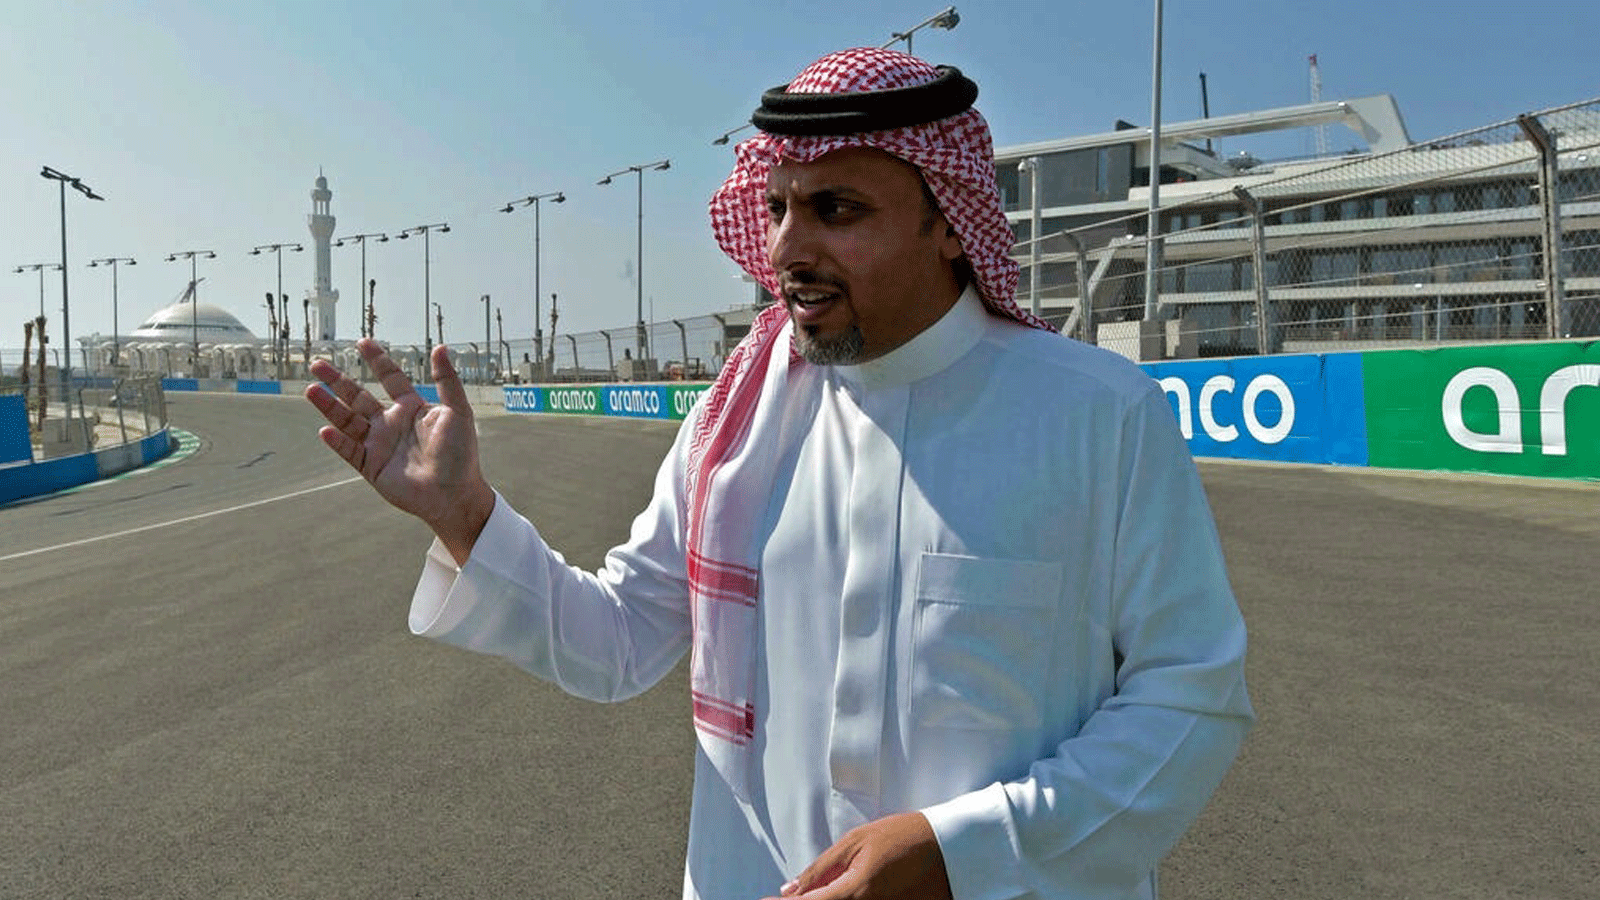 الأمير خالد بن سلطان الفيصل، رئيس الاتحاد السعودي للسيارات والدراجات النارية، يتحدث في حلبة كورنيش جدة التي ستستضيف سباق الجائزة الكبرى السعودي.